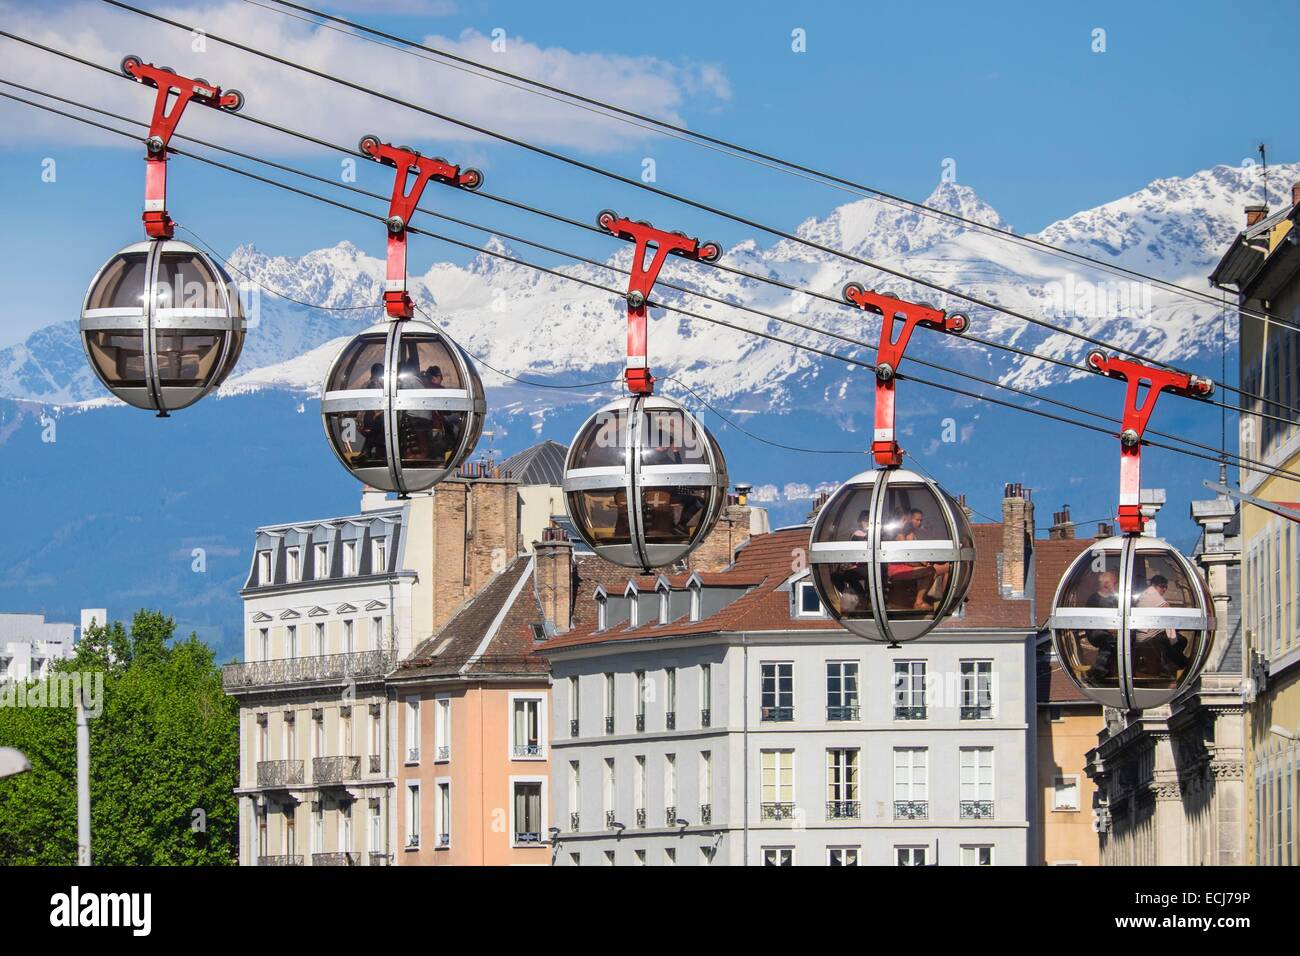 Frankreich, Isere, Grenoble, die Seilbahn oder die Bläschen, die erste urbane Seilbahn der Welt mit Belledonne massiv im Hintergrund Stockfoto